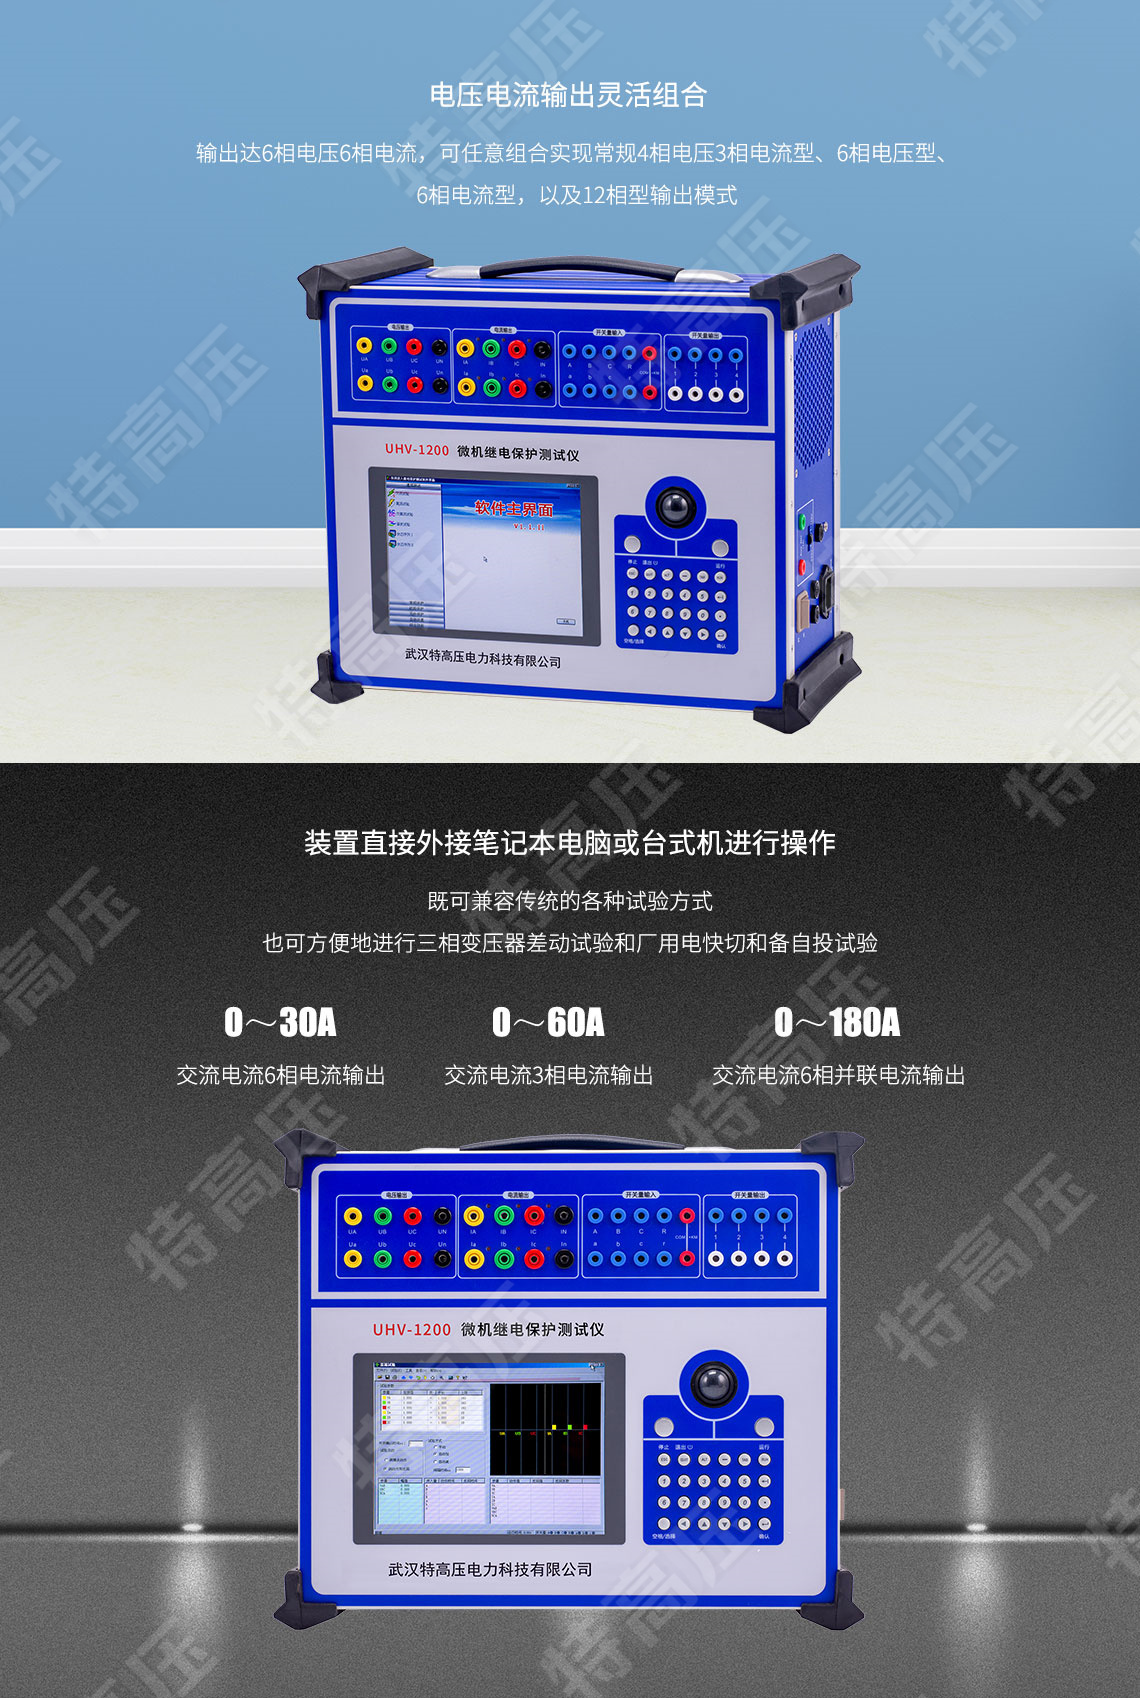 HT-1200 微機繼電保護測試儀6U+6I(圖2)